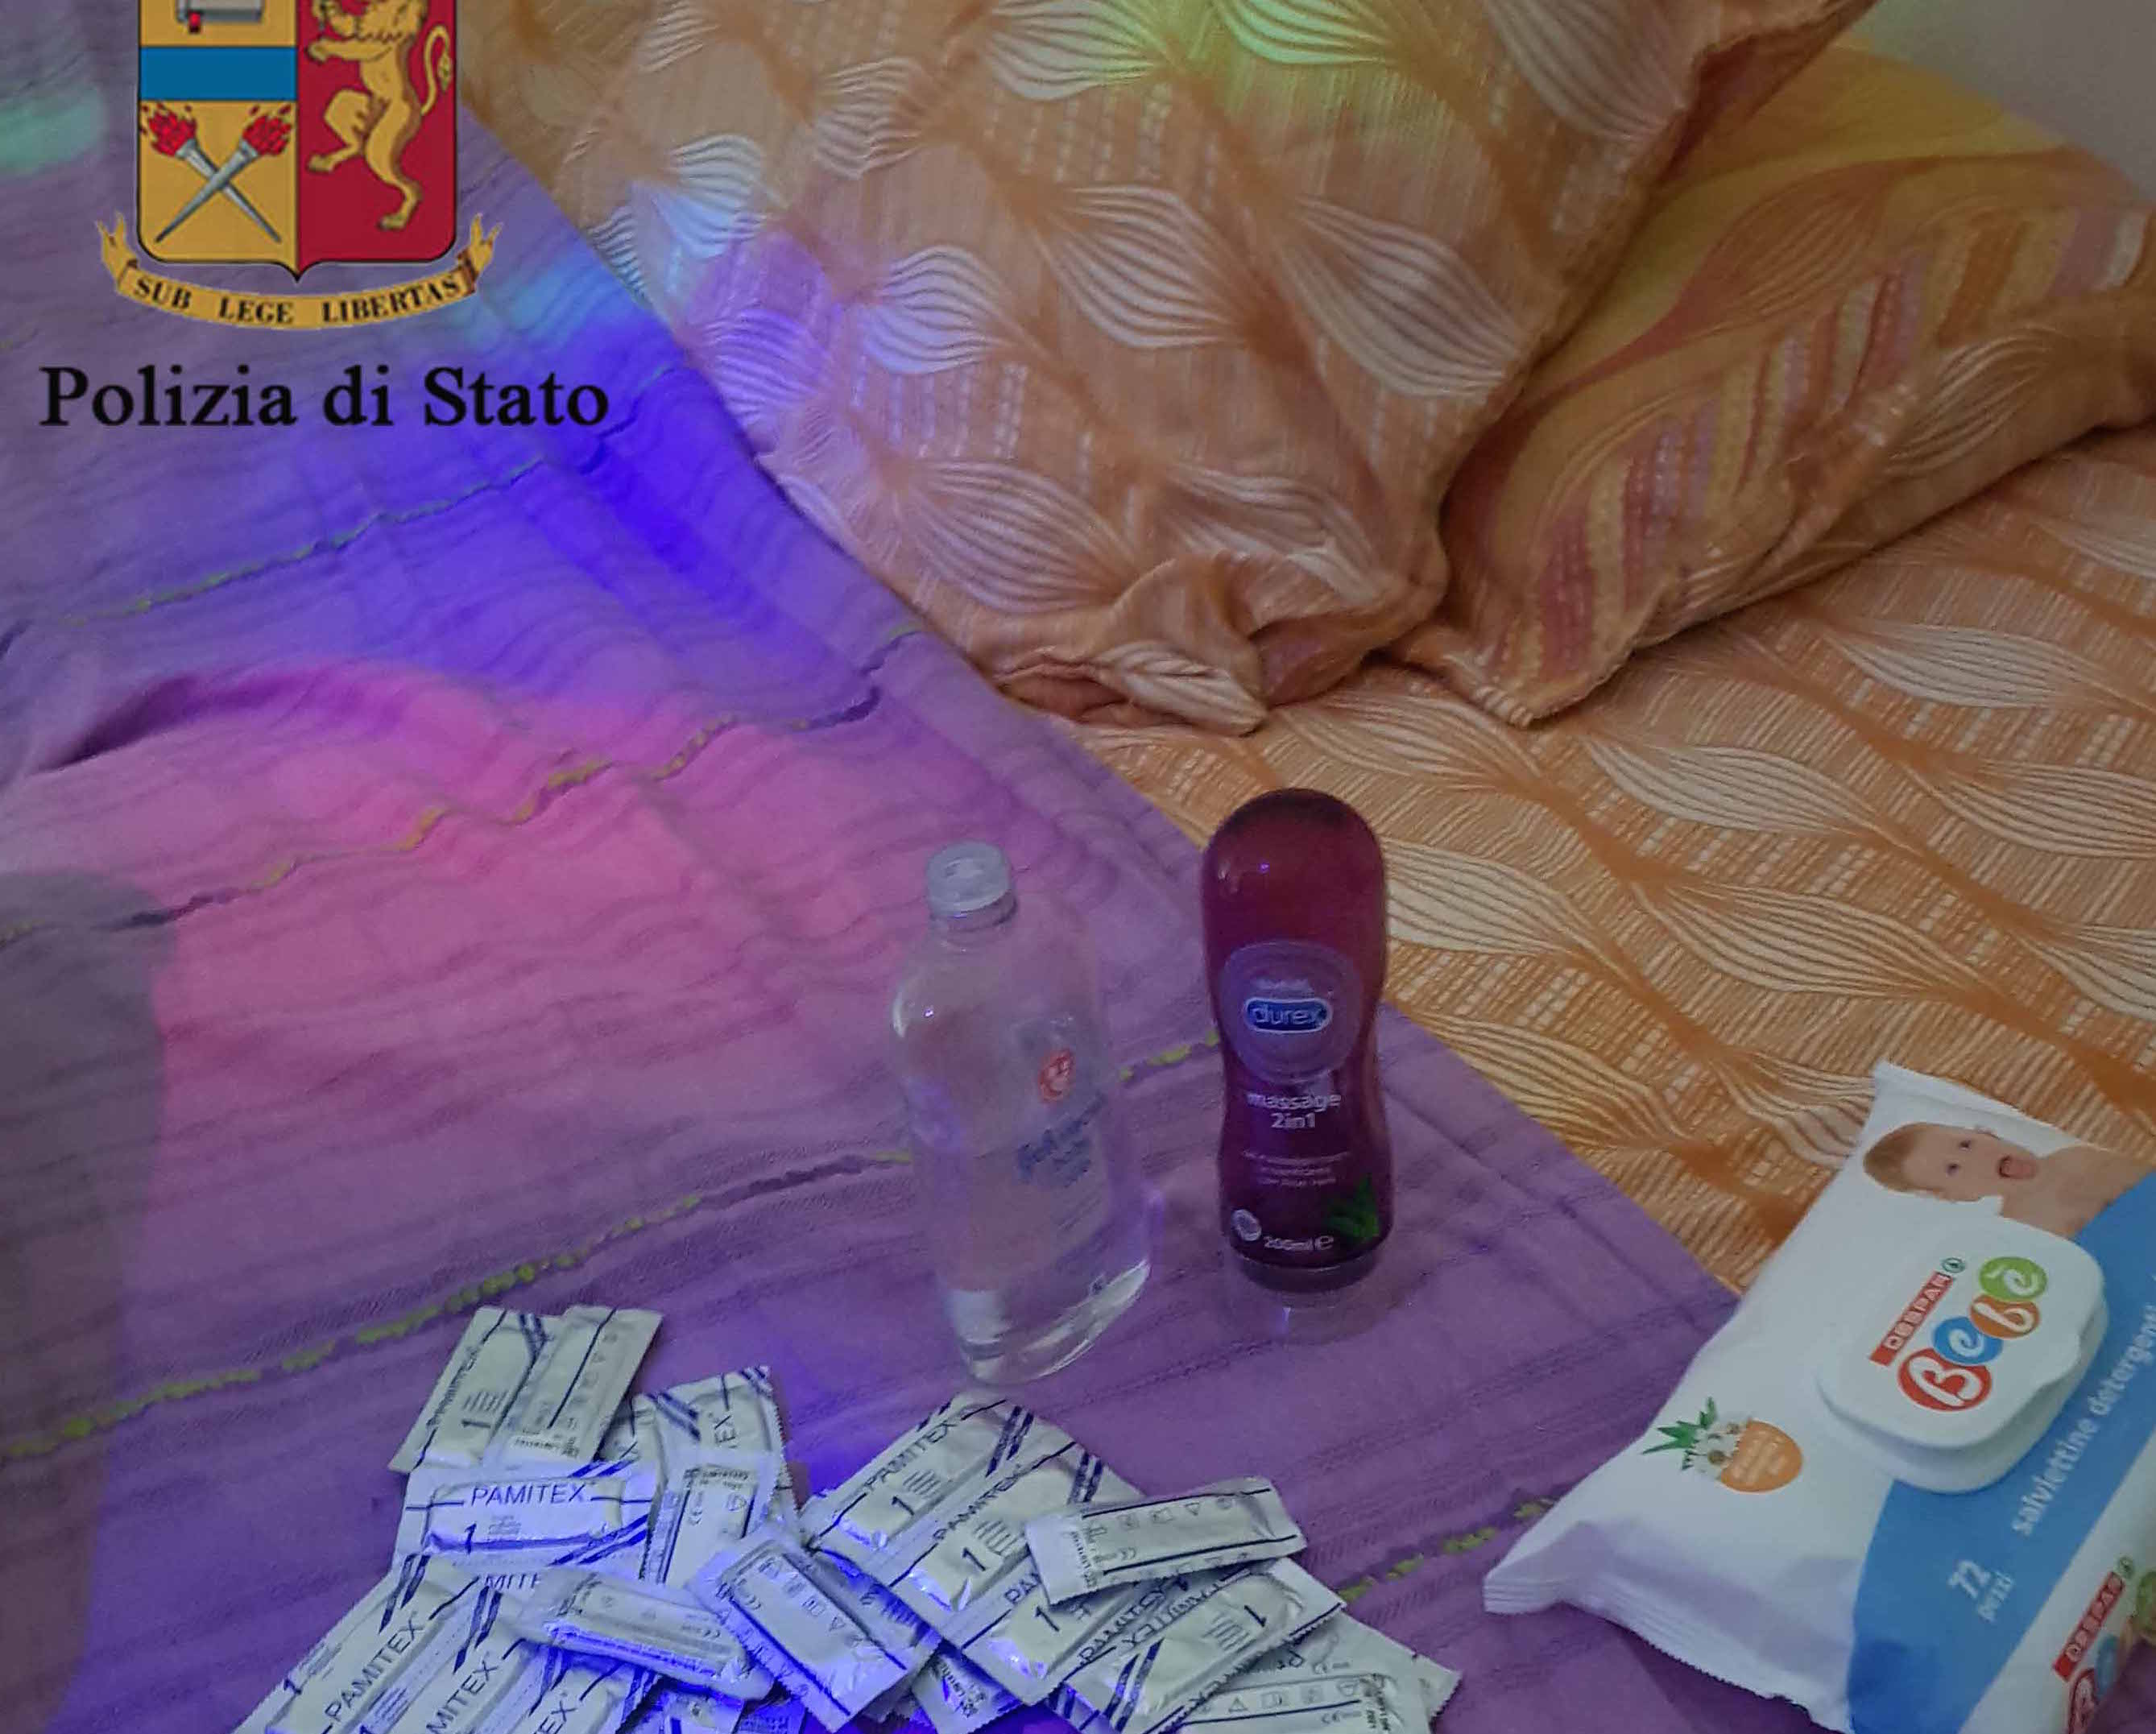 Prostituzione, chiusa una casa a "luci rosse" a Ragusa VIDEO